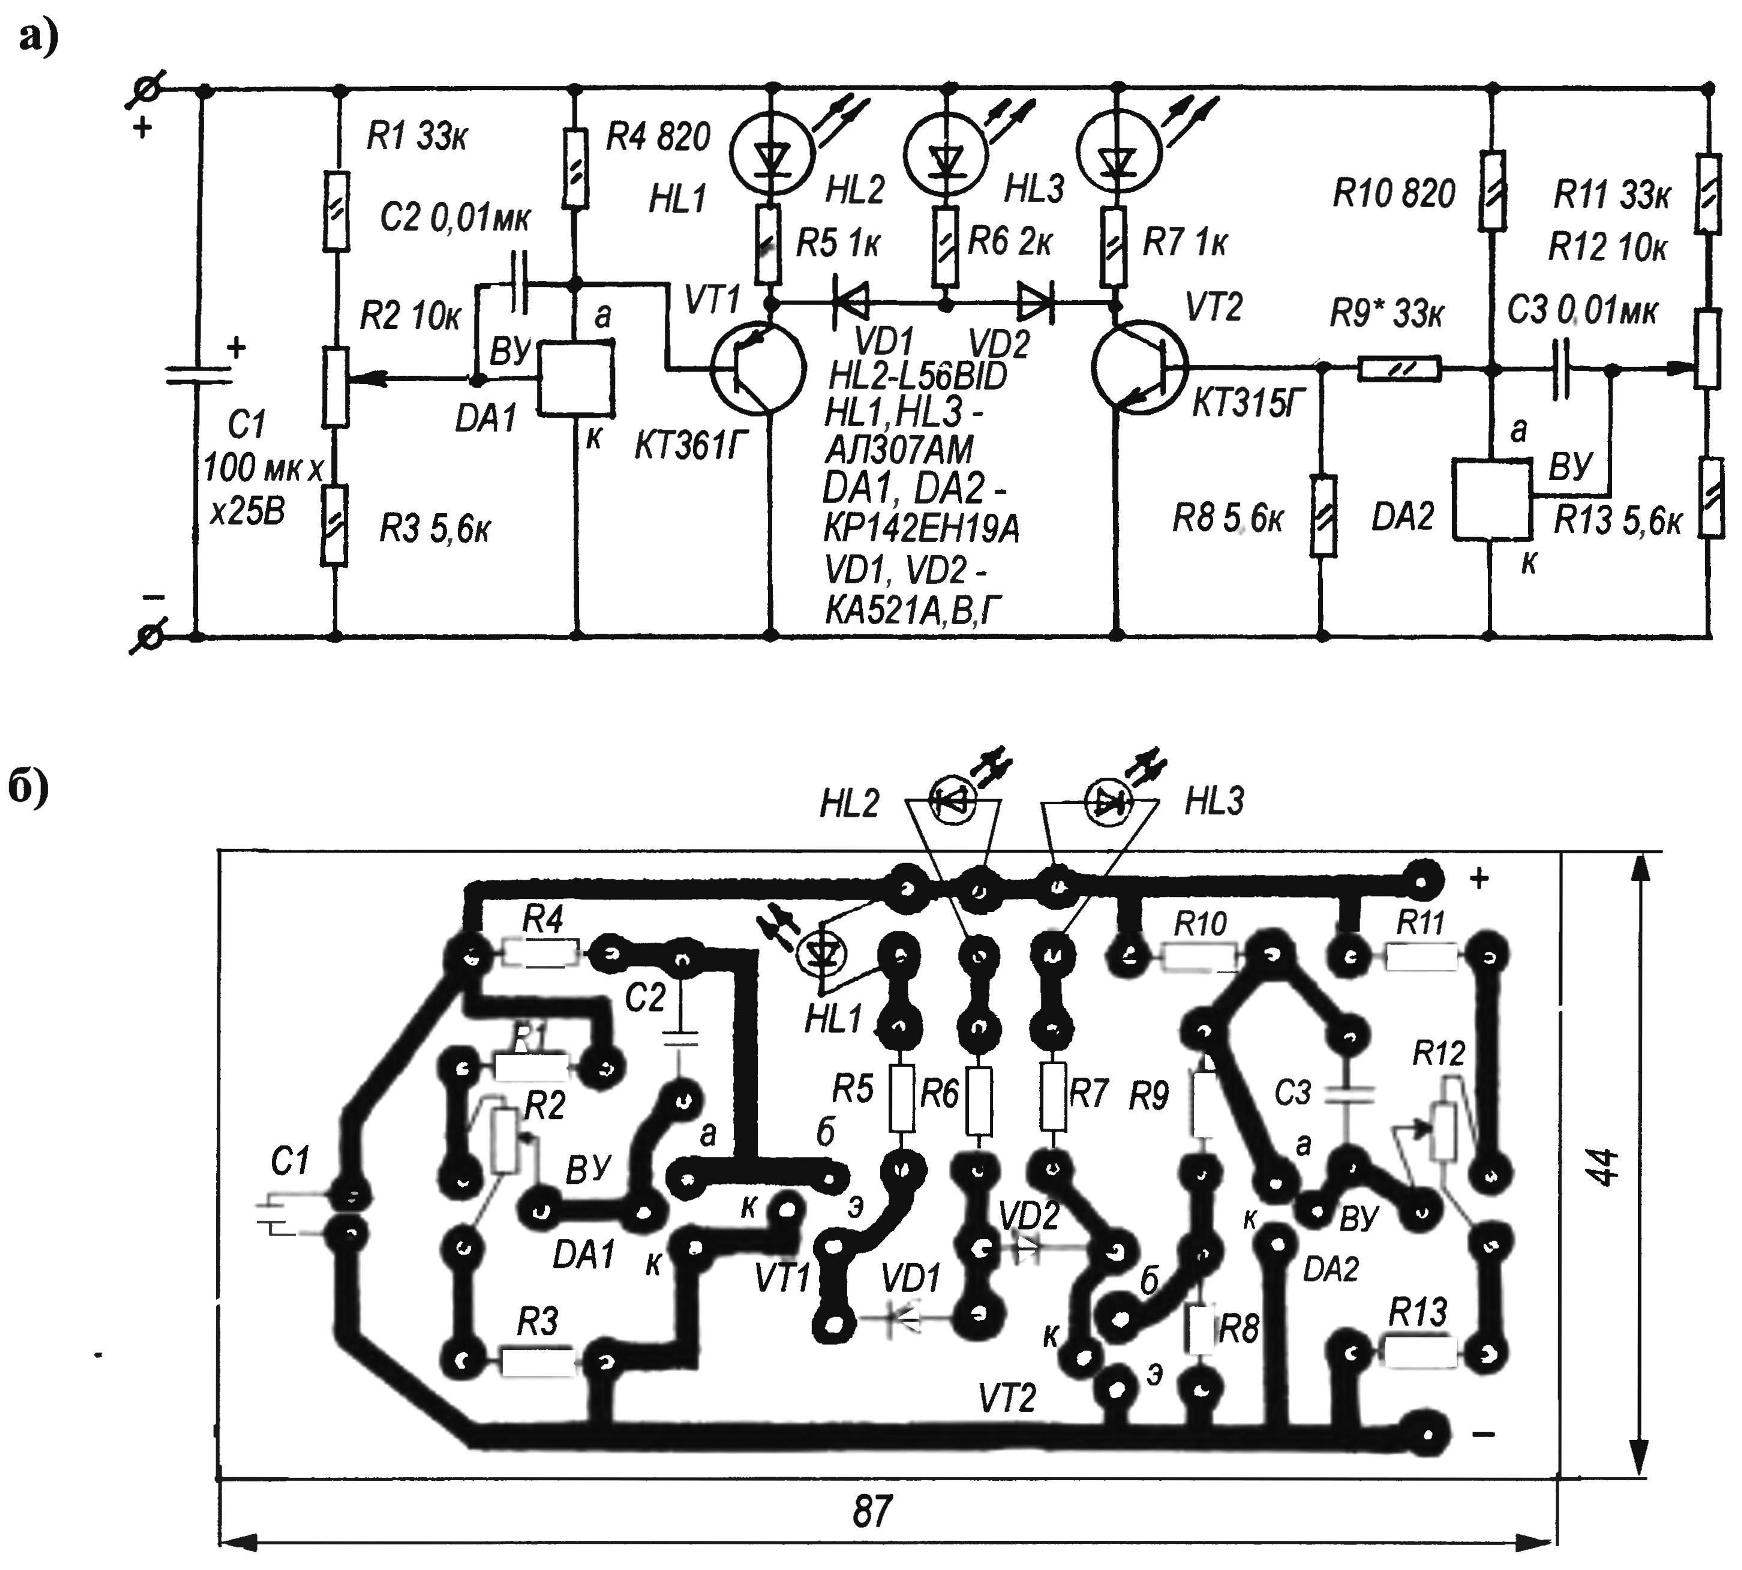 Принципиальная электрическая схема (а) и печатная плата (б) прибора для контроля аккумулятора на базе микросхемы КР142ЕН19А